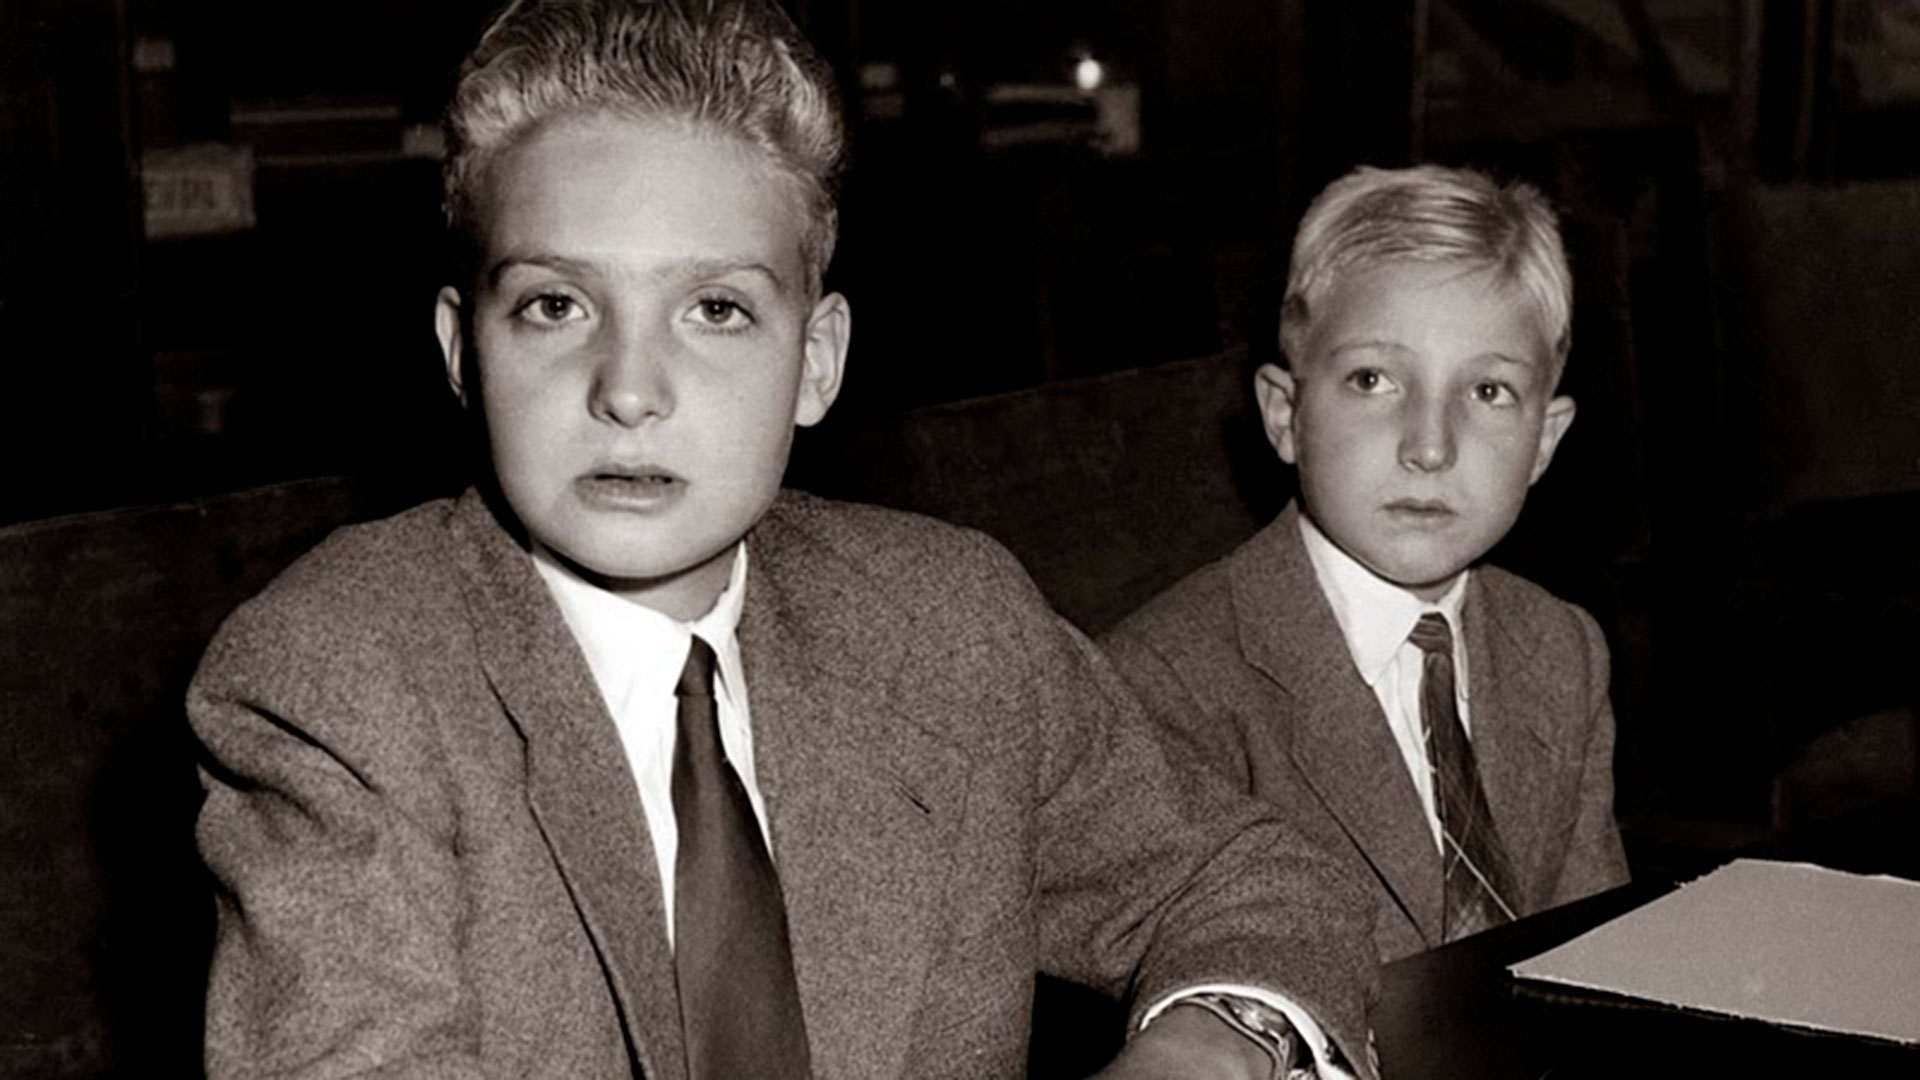 El 29 de marzo de 1956, Juan Carlos y su hermano Alfonso, se encerraron en el gimnasio de la residencia familiar en Estoril. Se escuchó un disparo seguido de un grito que alarmó a toda la casa. El menor de los Borbón estaba muerto